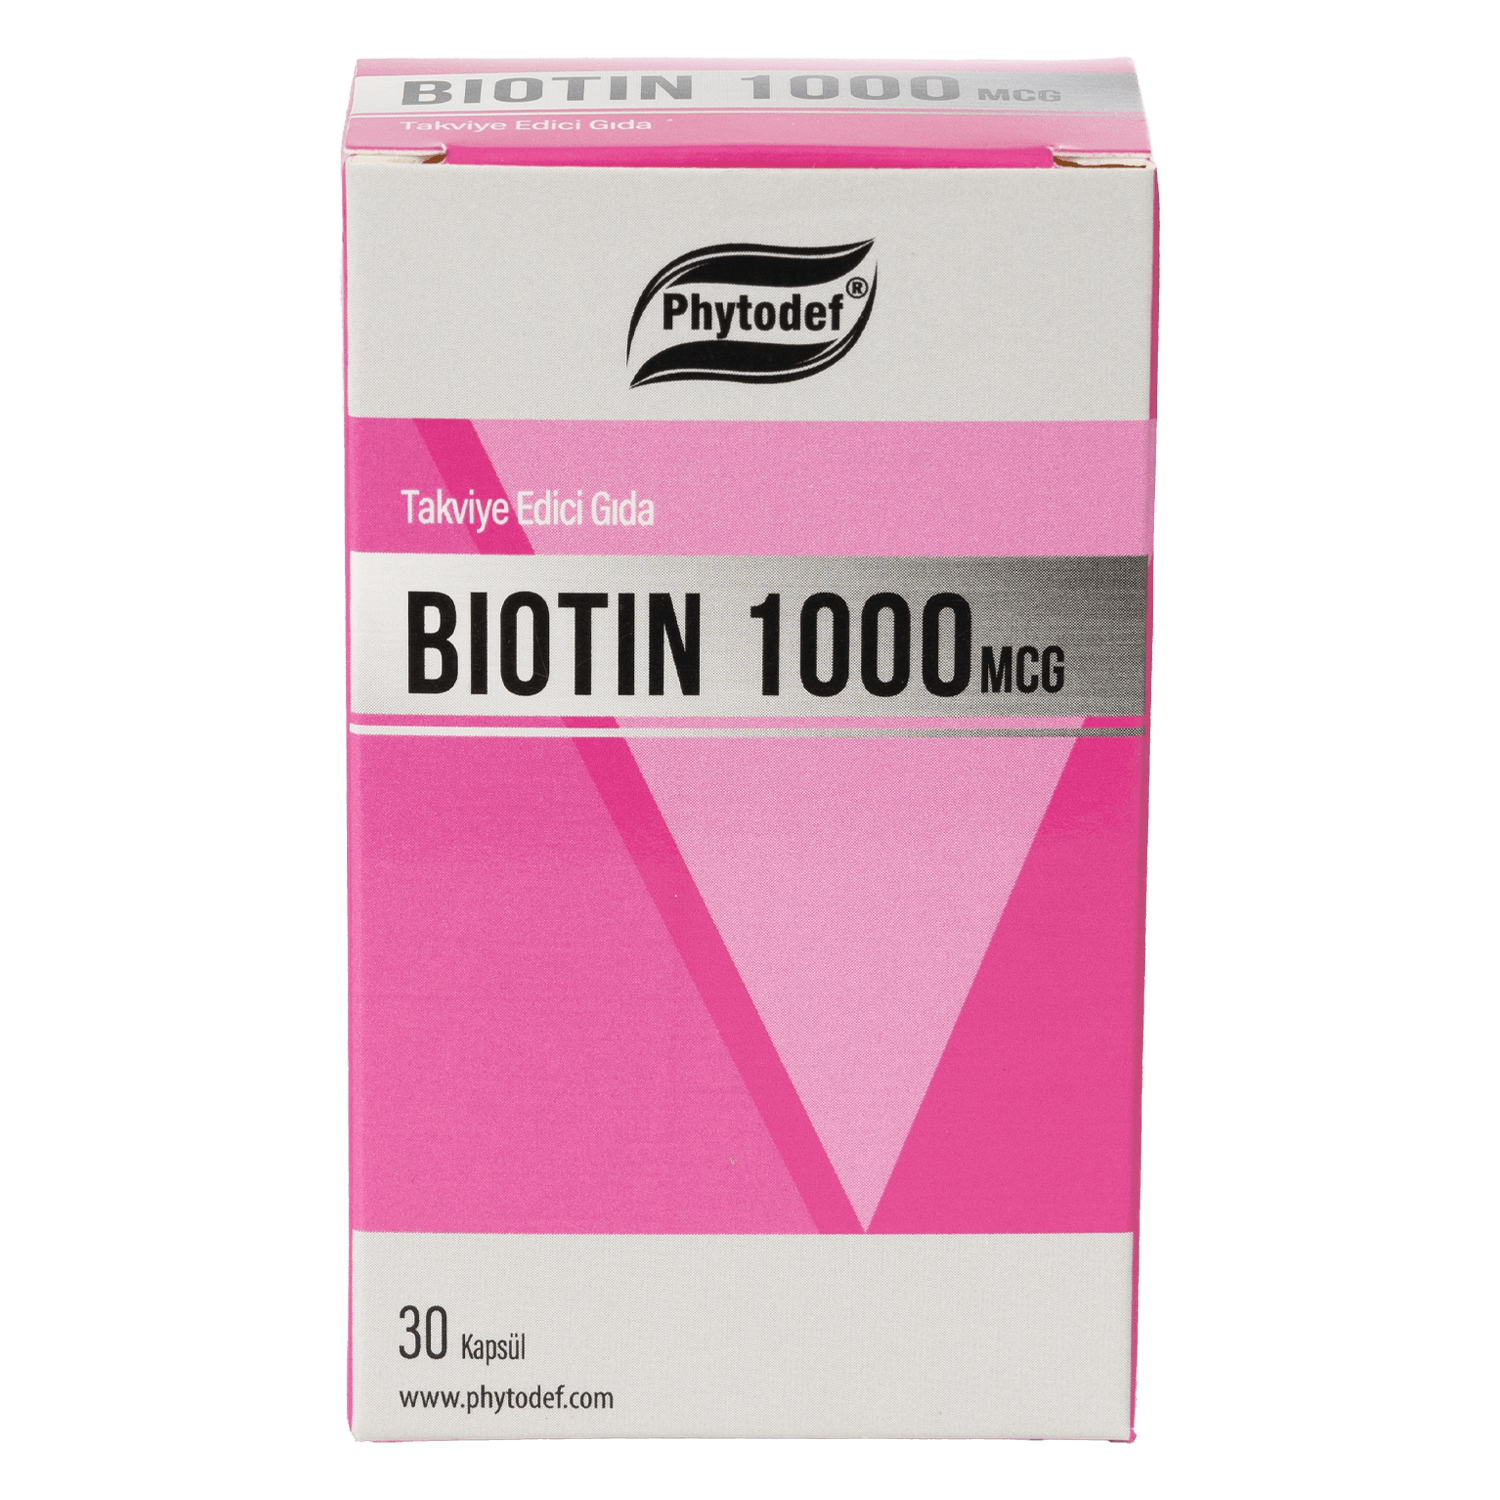 Biotin 1000 mcg - 30 Kapsül